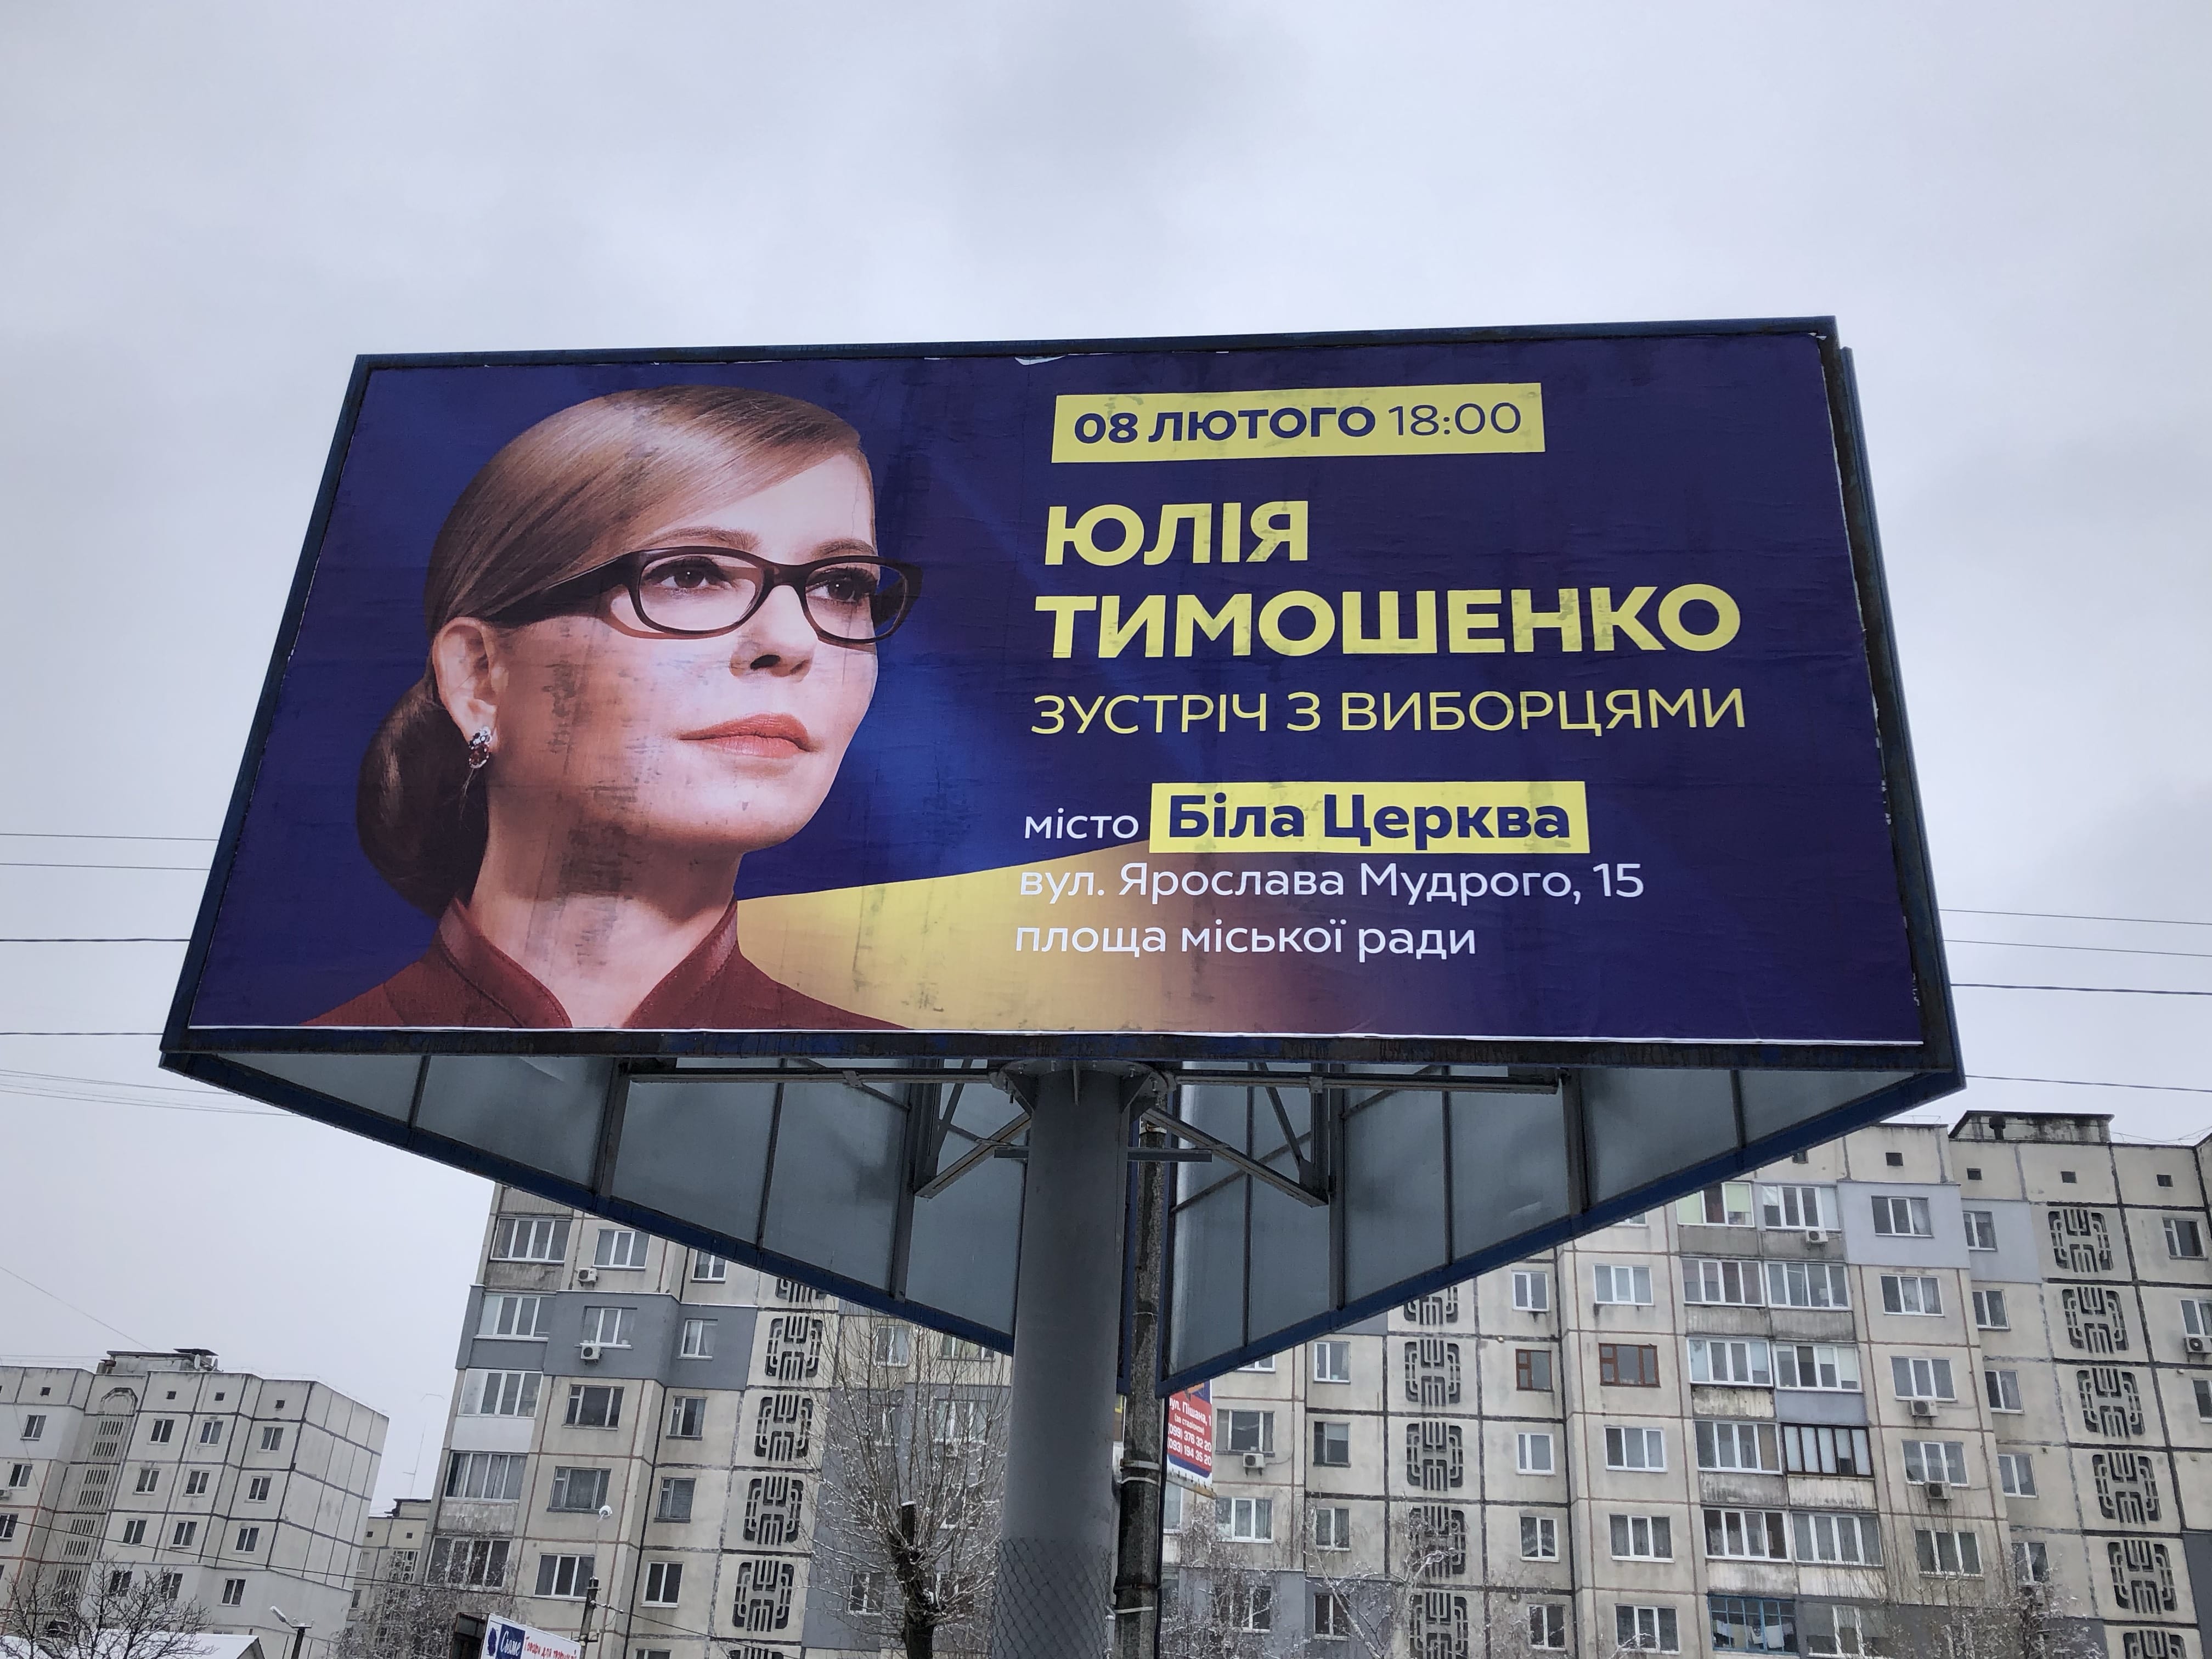 09 02 19 vizyt Tymoshenko BC bilbord Obuhiv Kyivska oblast min